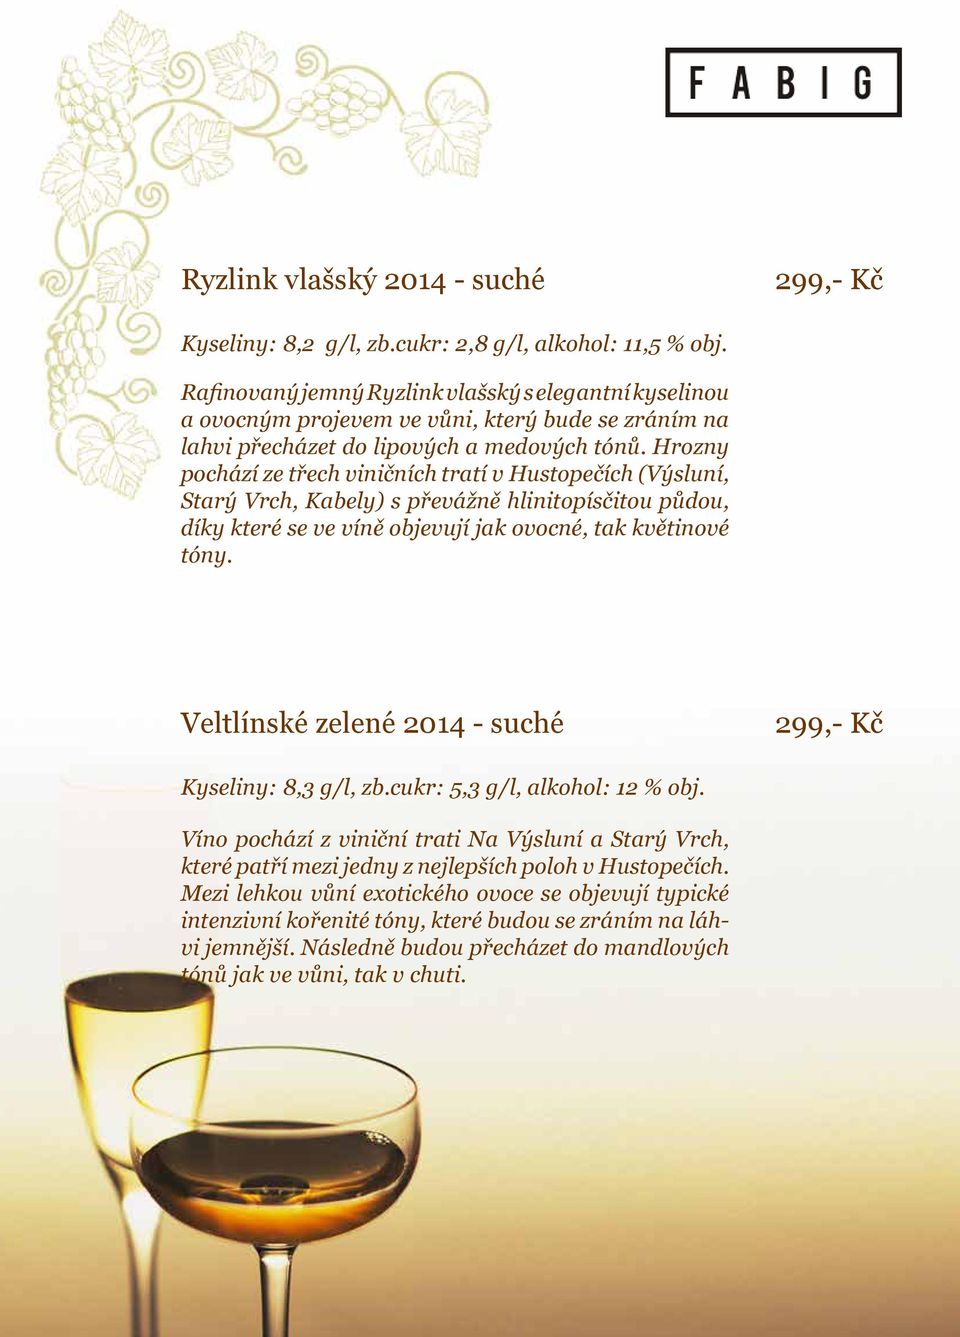 Hrozny pochází ze třech viničních tratí v Hustopečích (Výsluní, Starý Vrch, Kabely) s převážně hlinitopísčitou půdou, díky které se ve víně objevují jak ovocné, tak květinové tóny.